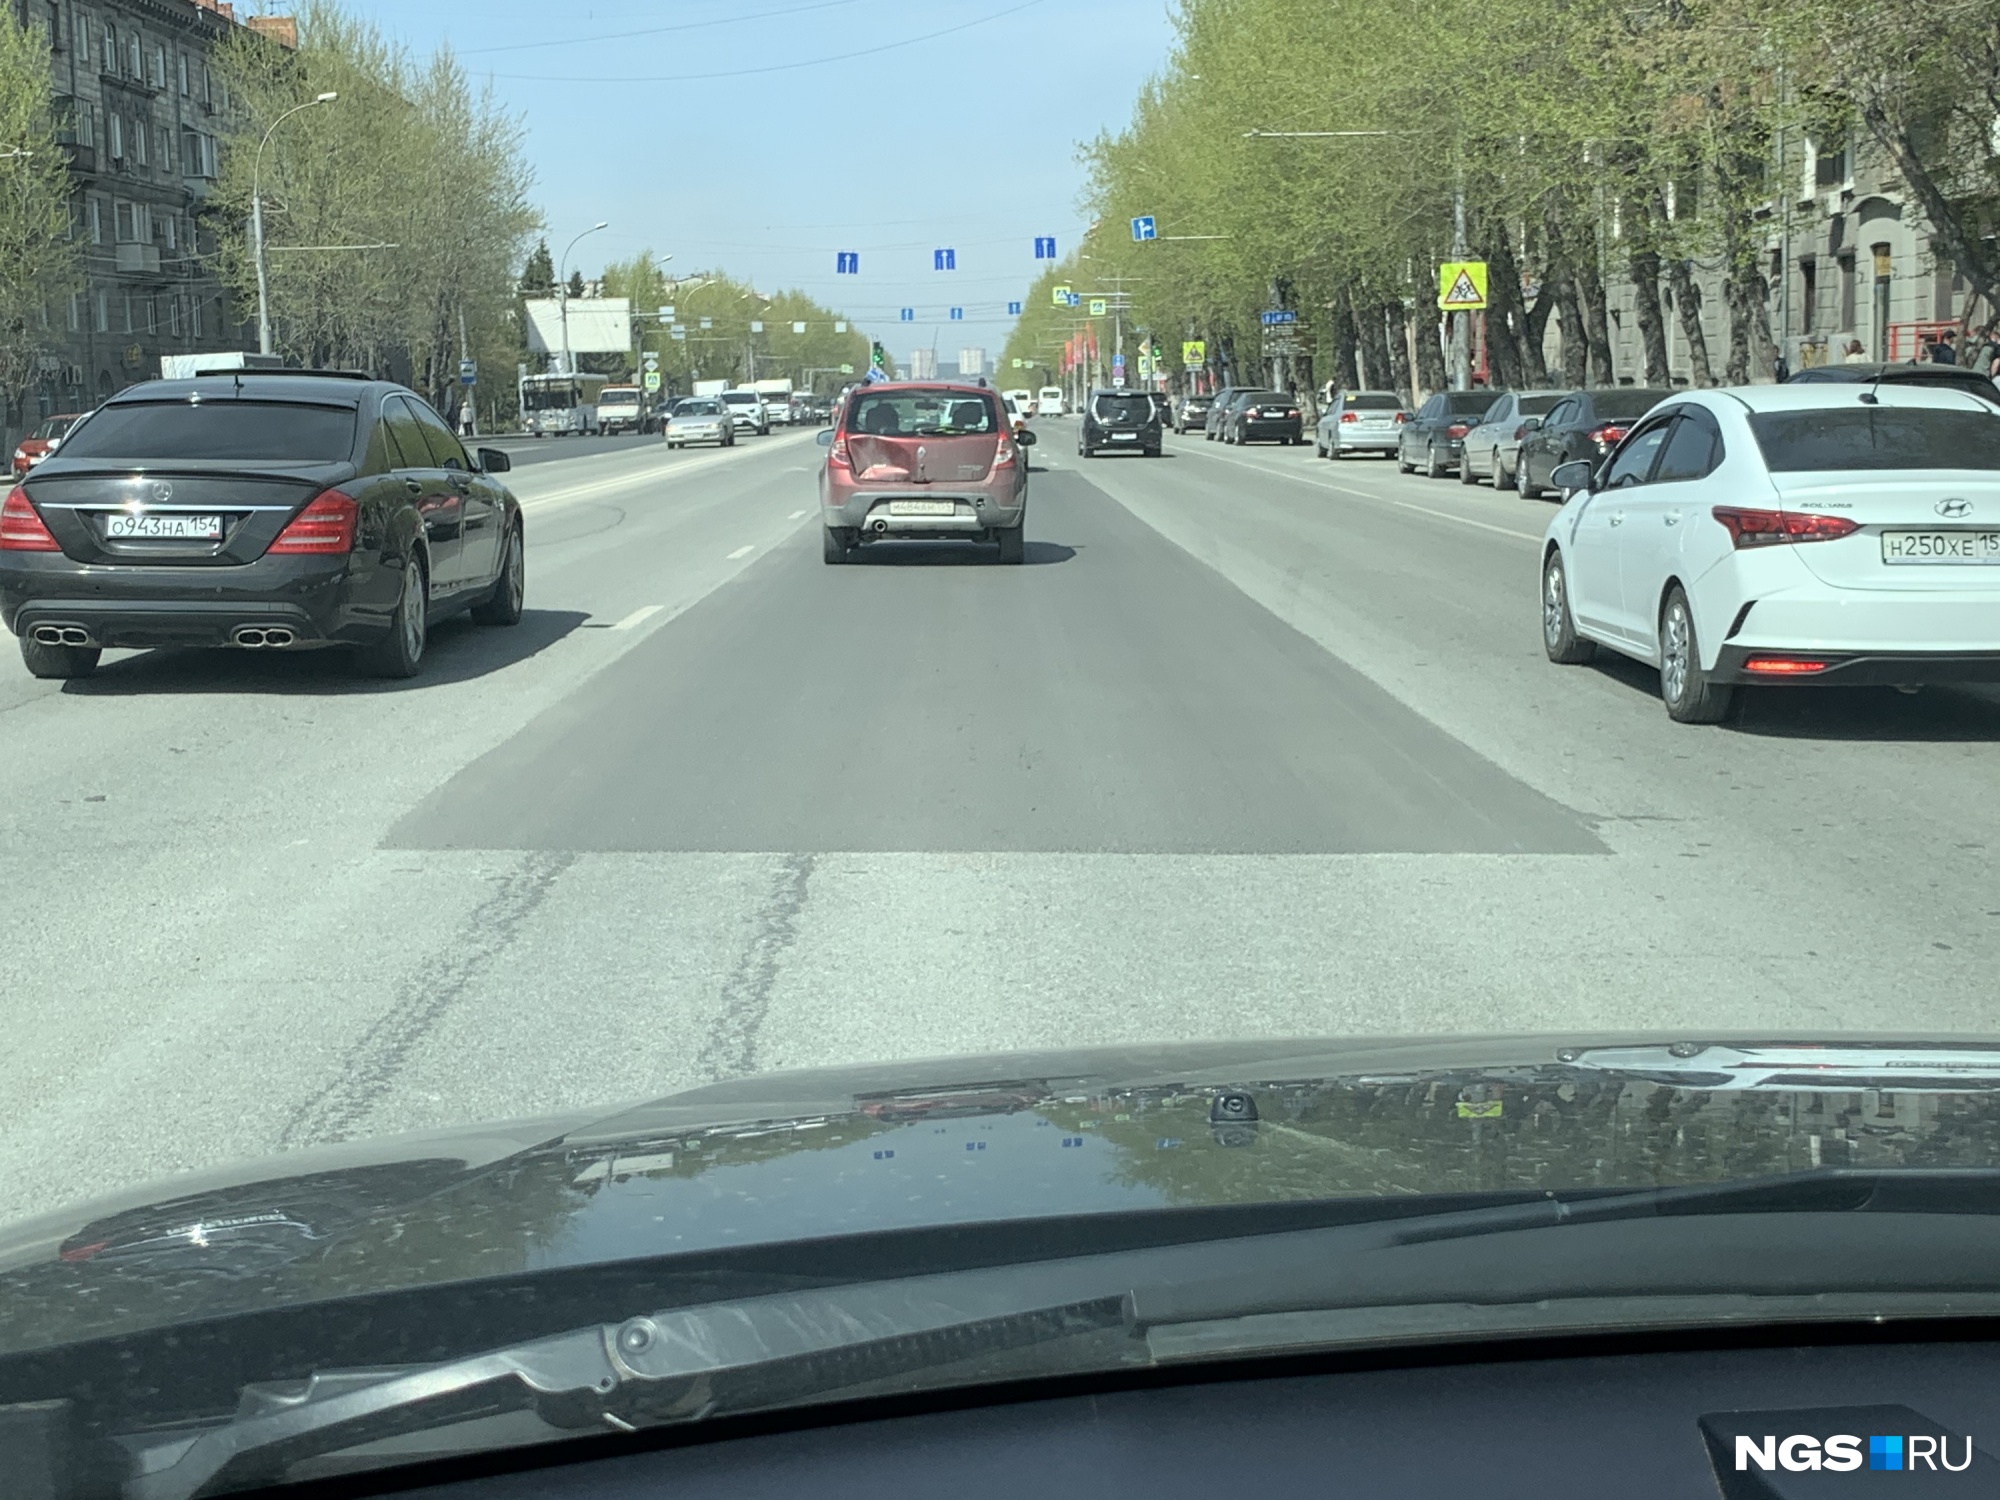 Авторедактор НГС Дмитрий Косенко лично побывал на объекте и увидел, что переделали не всю улицу, а выборочно участки